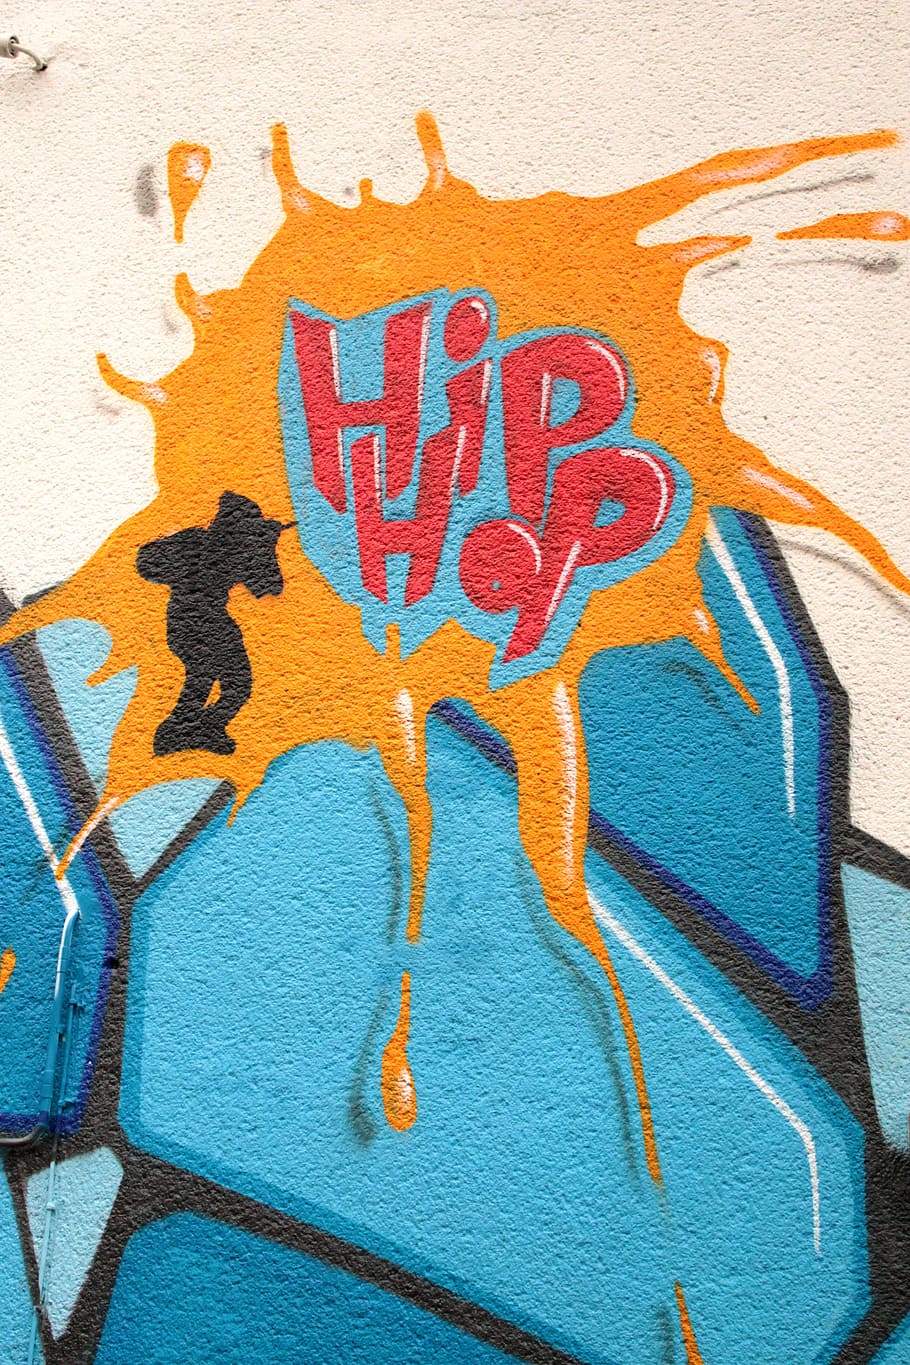 Free Fire Hip Hop Wallpapers Top Những Hình Ảnh Đẹp